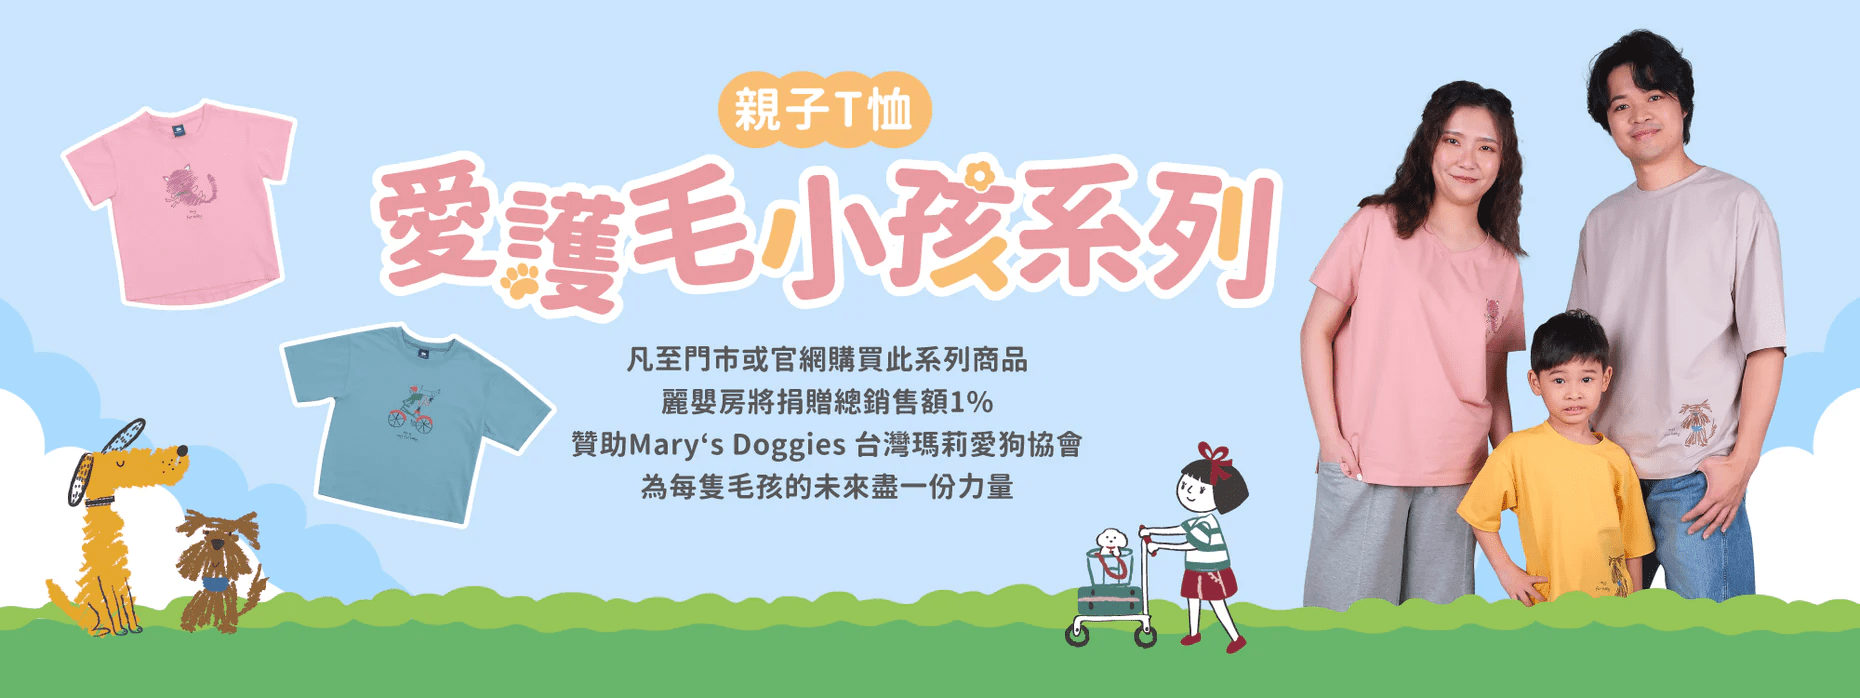 麗嬰房攜手Mary’s Doggies舉辦公益散步日 捐冰瓷棉產品收益給流浪動物